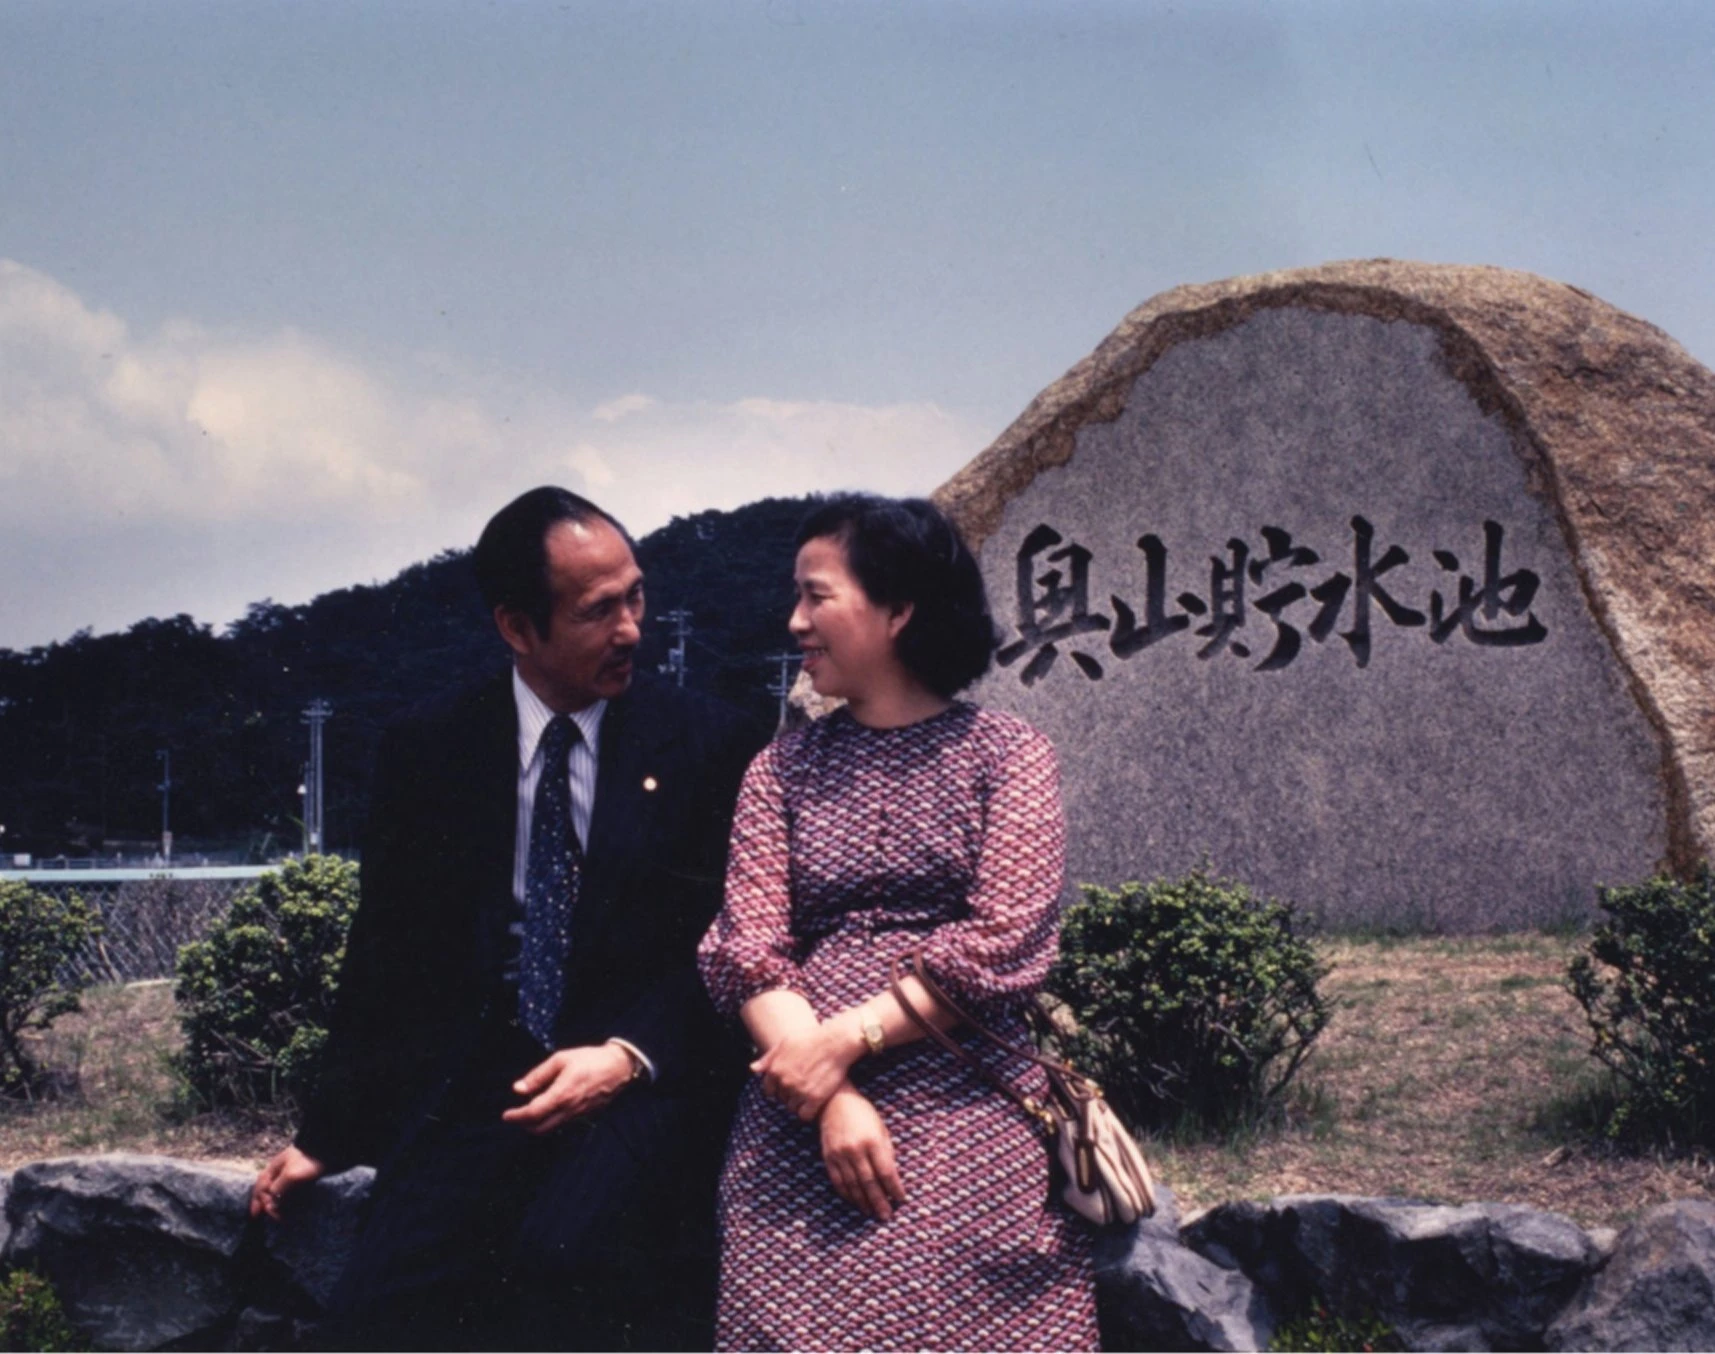 雄獅鉛筆廠負責人李阿目先生與妻李玉合照於日本，1975；李賢文攝影-圖片